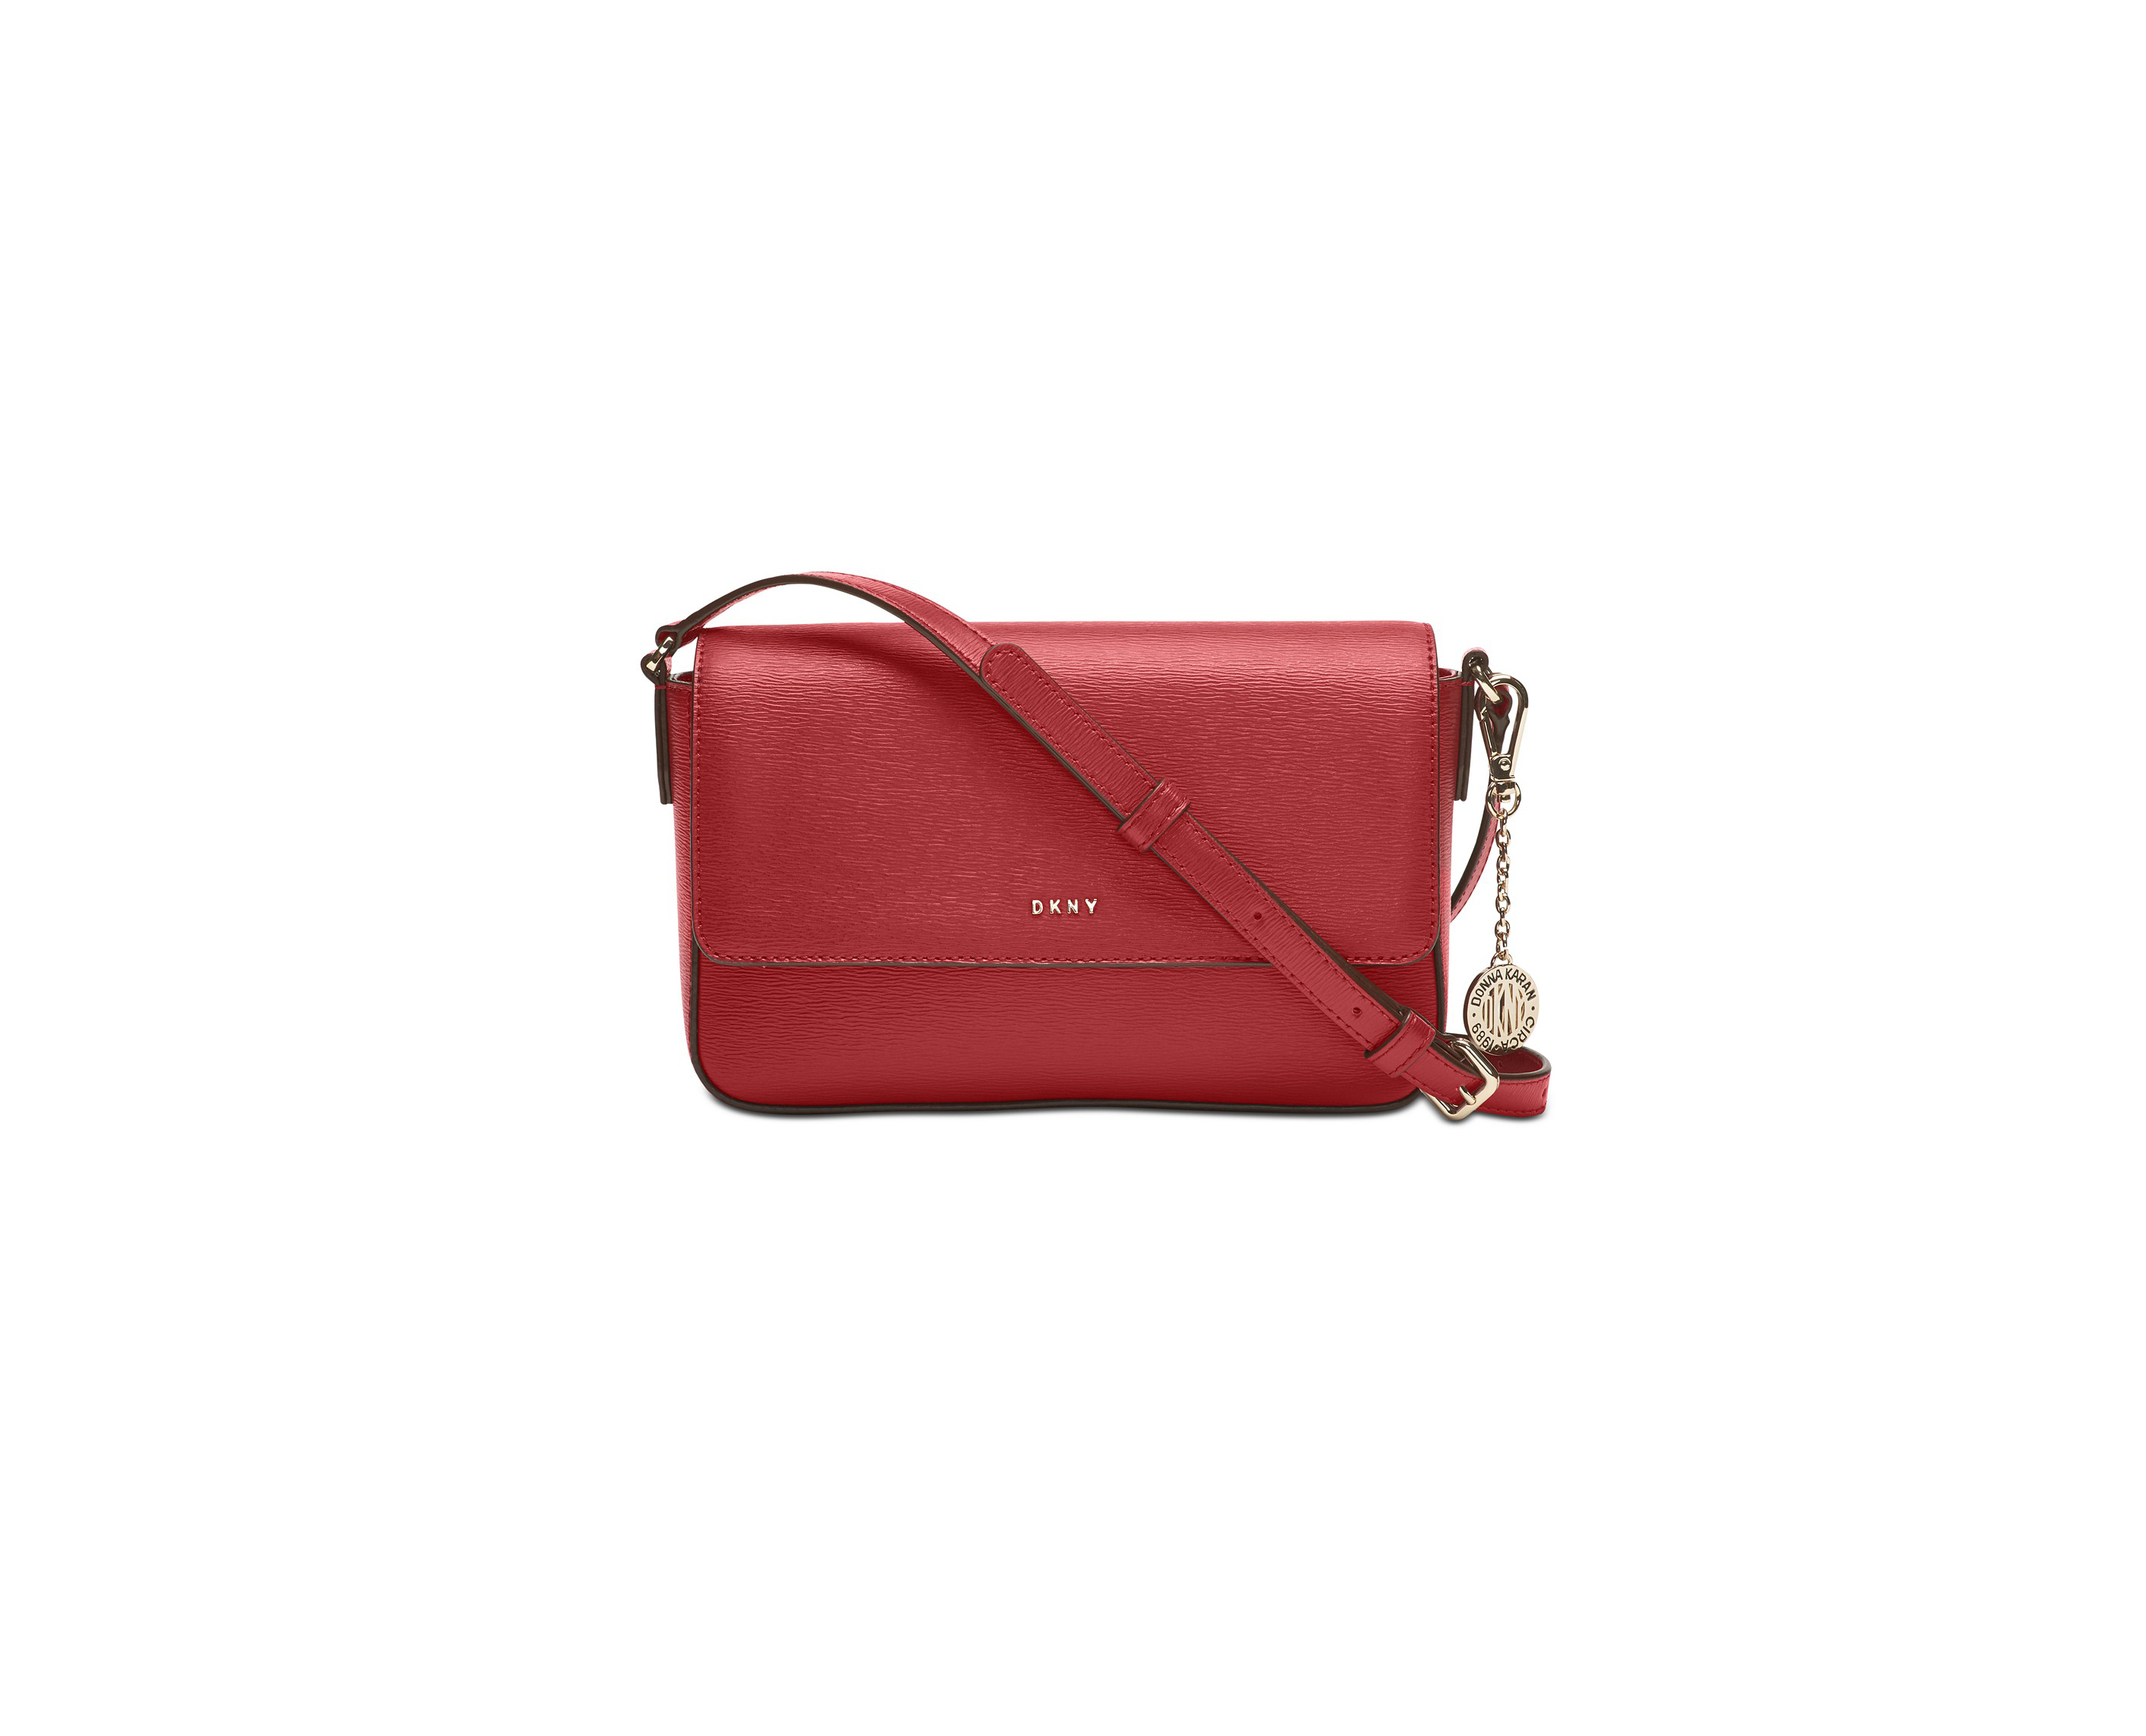 DKNY Purse Handbag Satchel Shoulder Crossbody Bag Red R83D1830 MSRP $228.00  | eBay